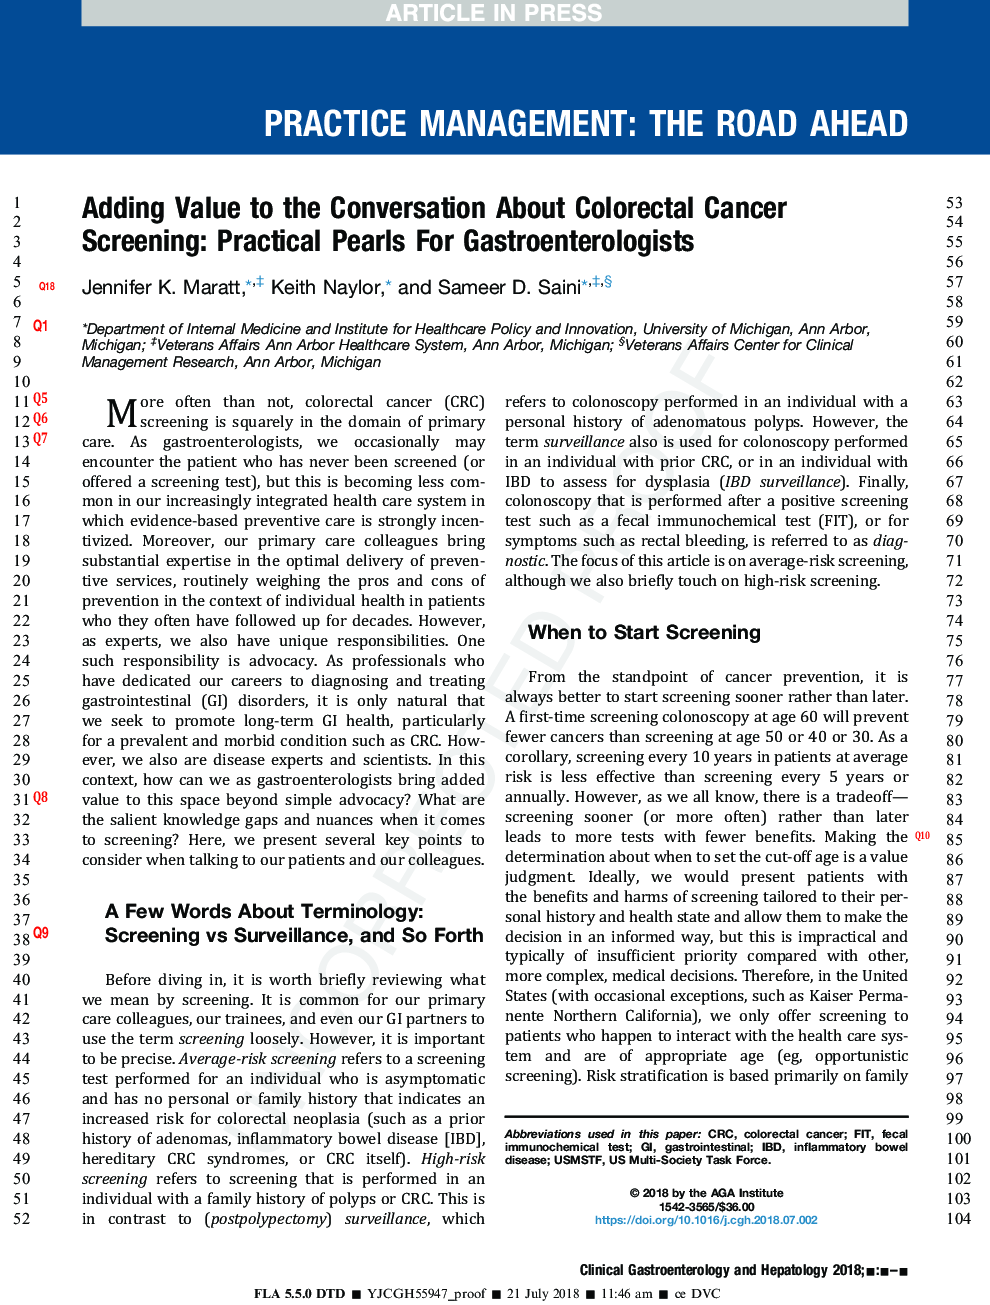 اضافه کردن ارزش به مکالمه درباره غربالگری سرطان کولورکتال: مروارید عملی برای متخصصان گوارش